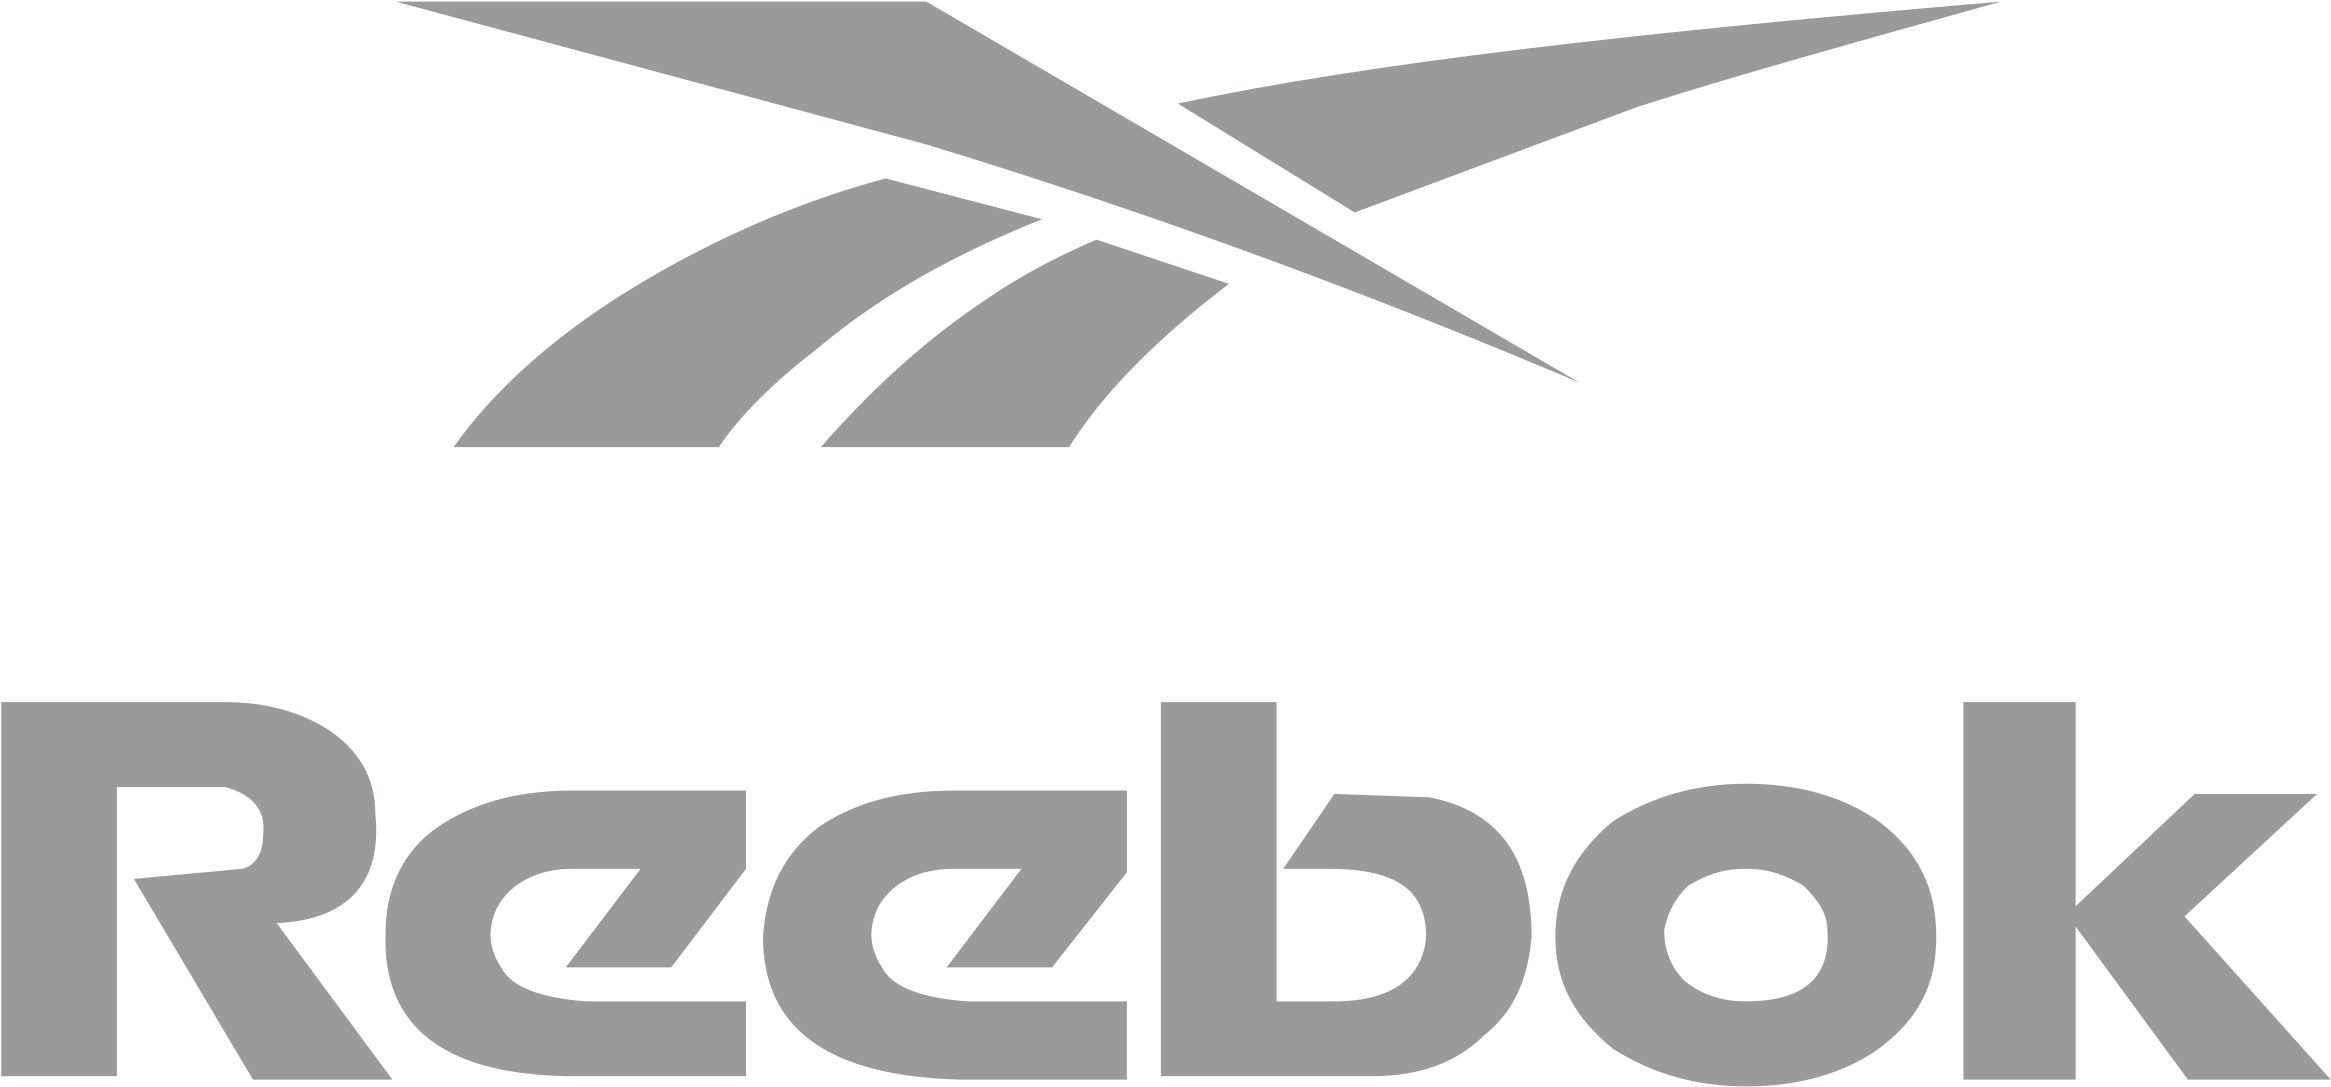 Reebok Logo Png Transparent - Reebok Logo (2400x2400), Png Download